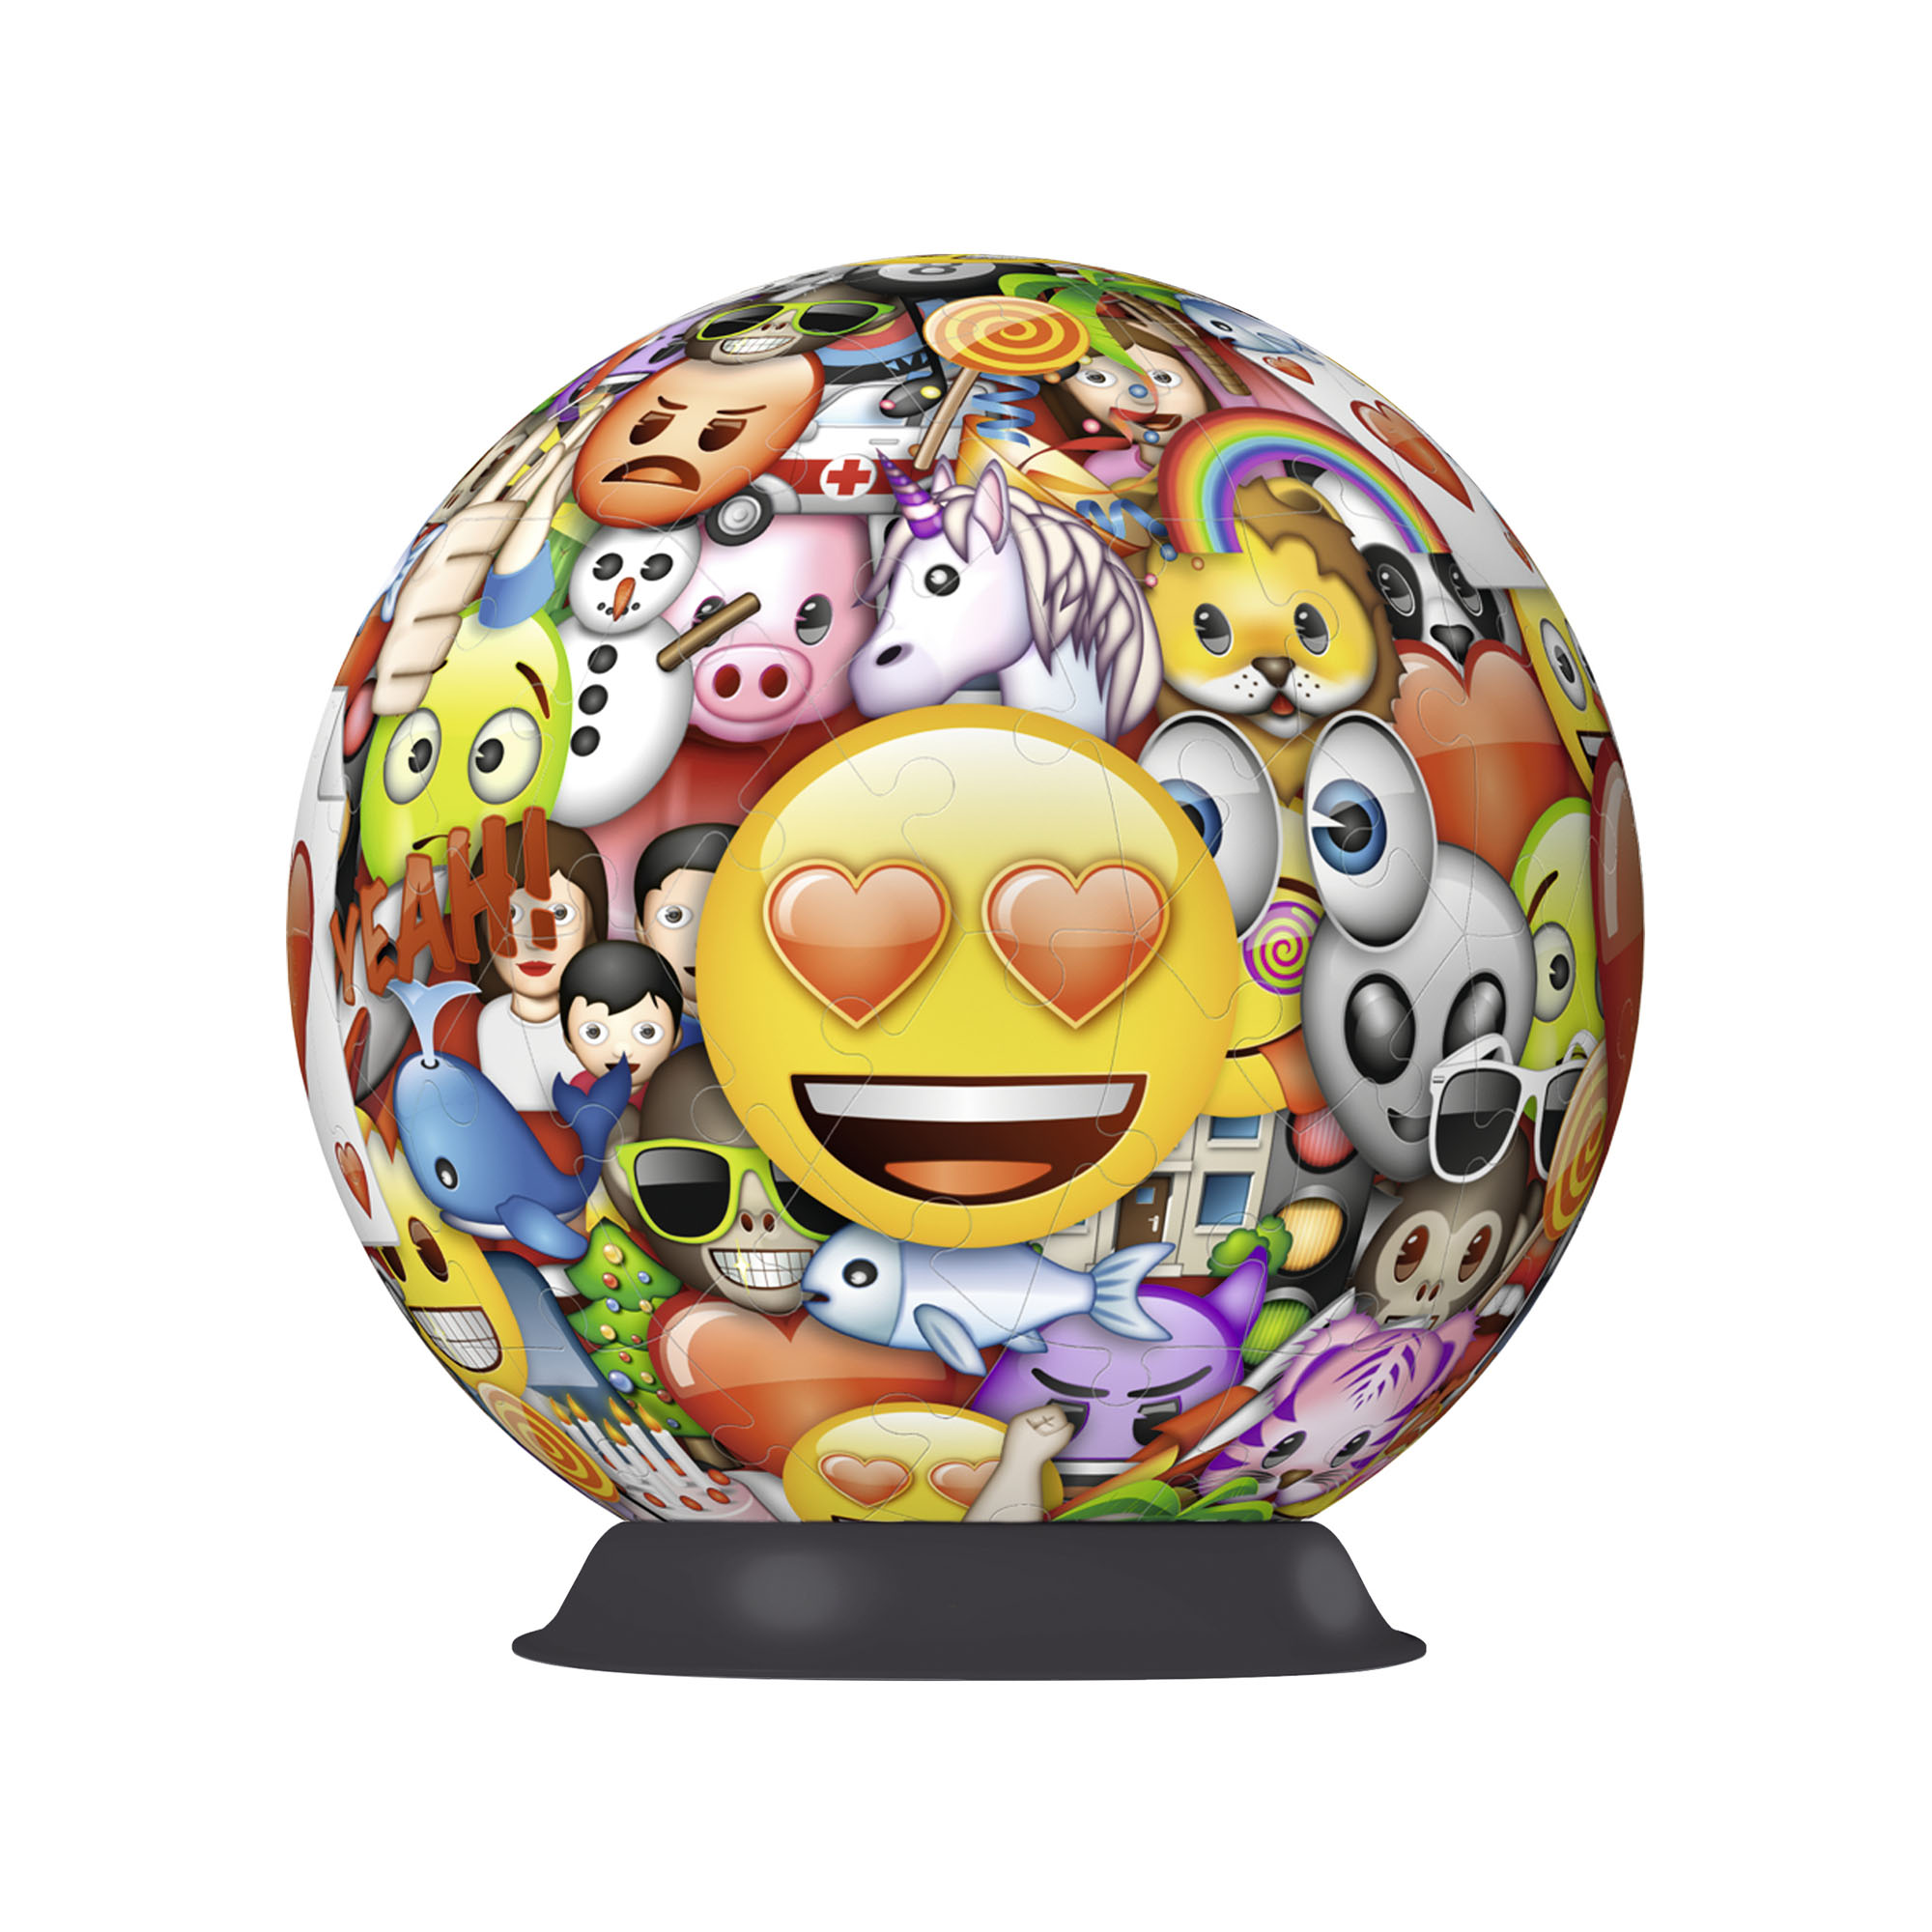 Ravensburger 3D Puzzleball 12198 - Emoji, , large